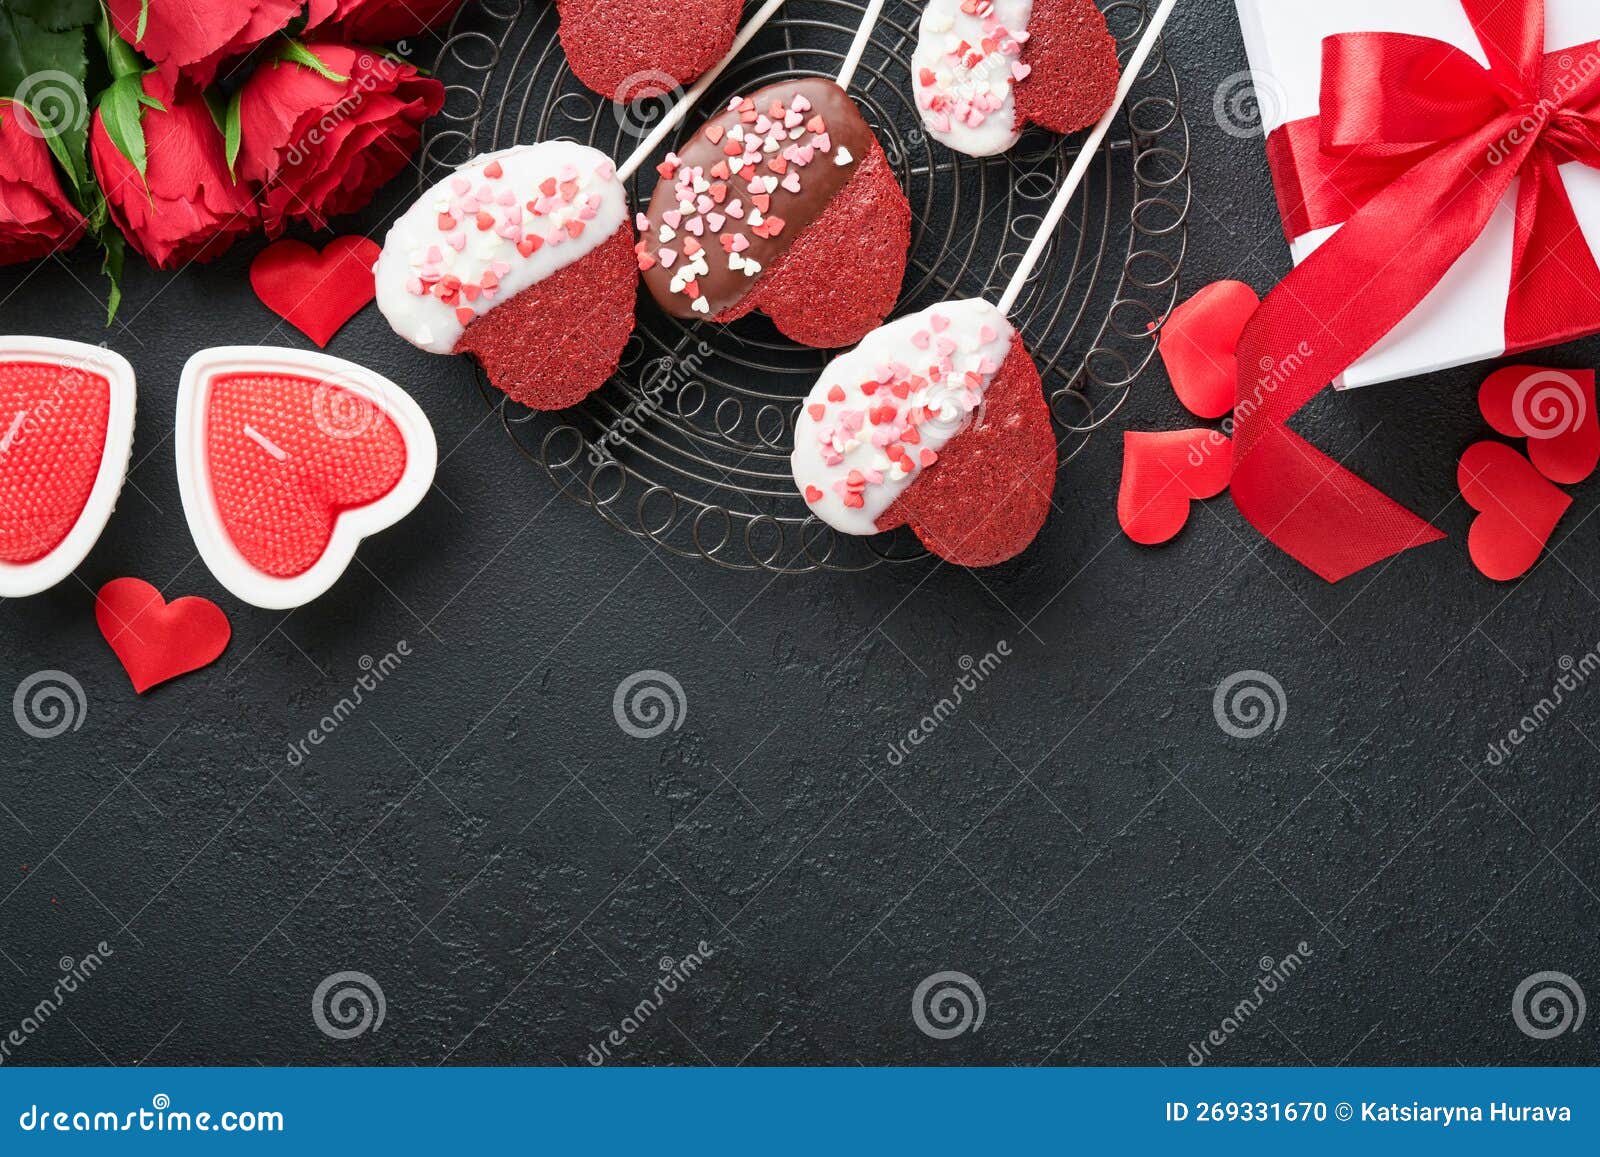 San Valentino, Caramelle a Forma Di Cuore Al Cioccolato Fotografia